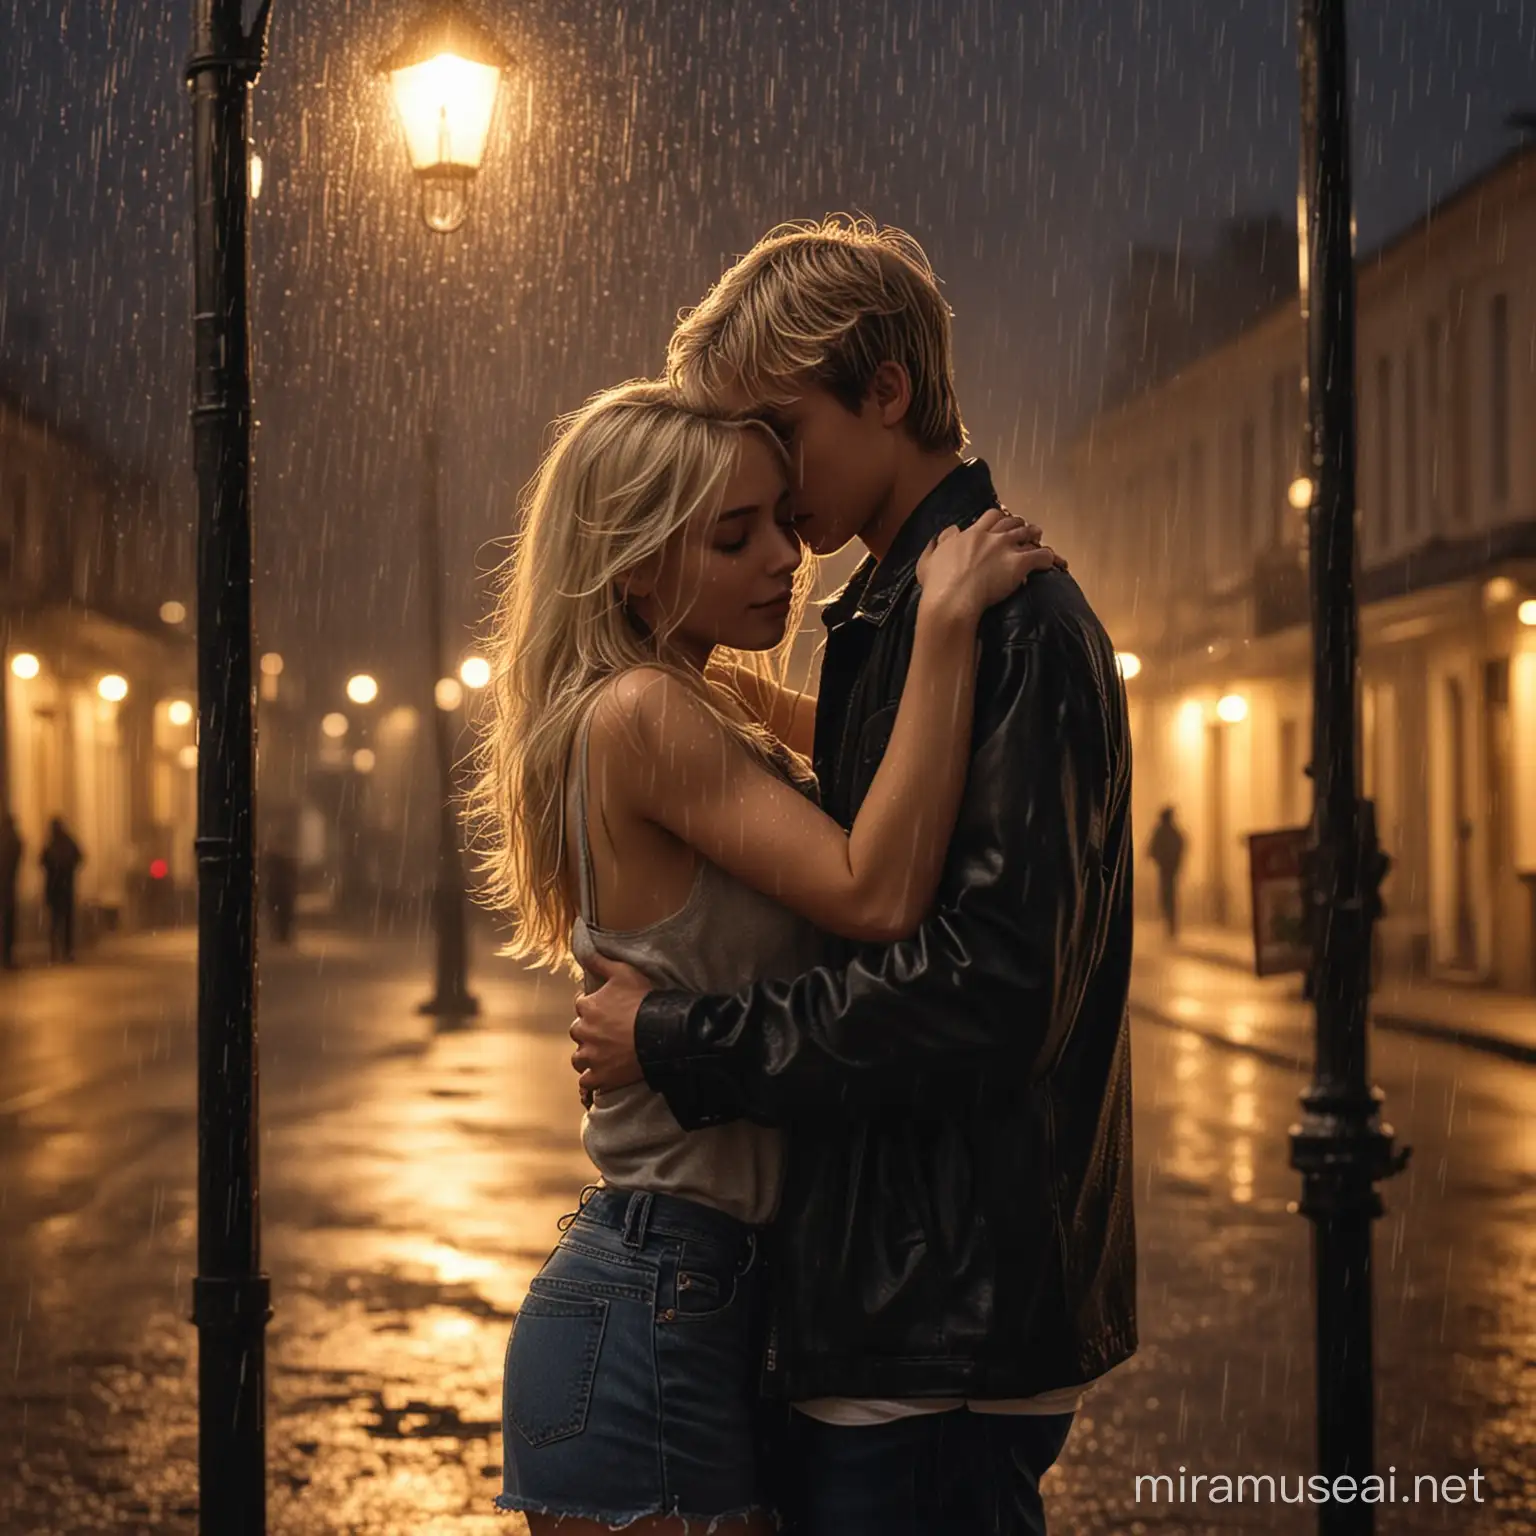 Kız ve erkek sarılıyor, akşam, loş sokak lambası ışığı, hafif yağmur, solda erkek sağ tarafta kız
kız hafif sarışın, çok seksi güzel, erkeğe sarılıyor
erkek yakışıklı, hafif kaslı, kıza sarılıyor